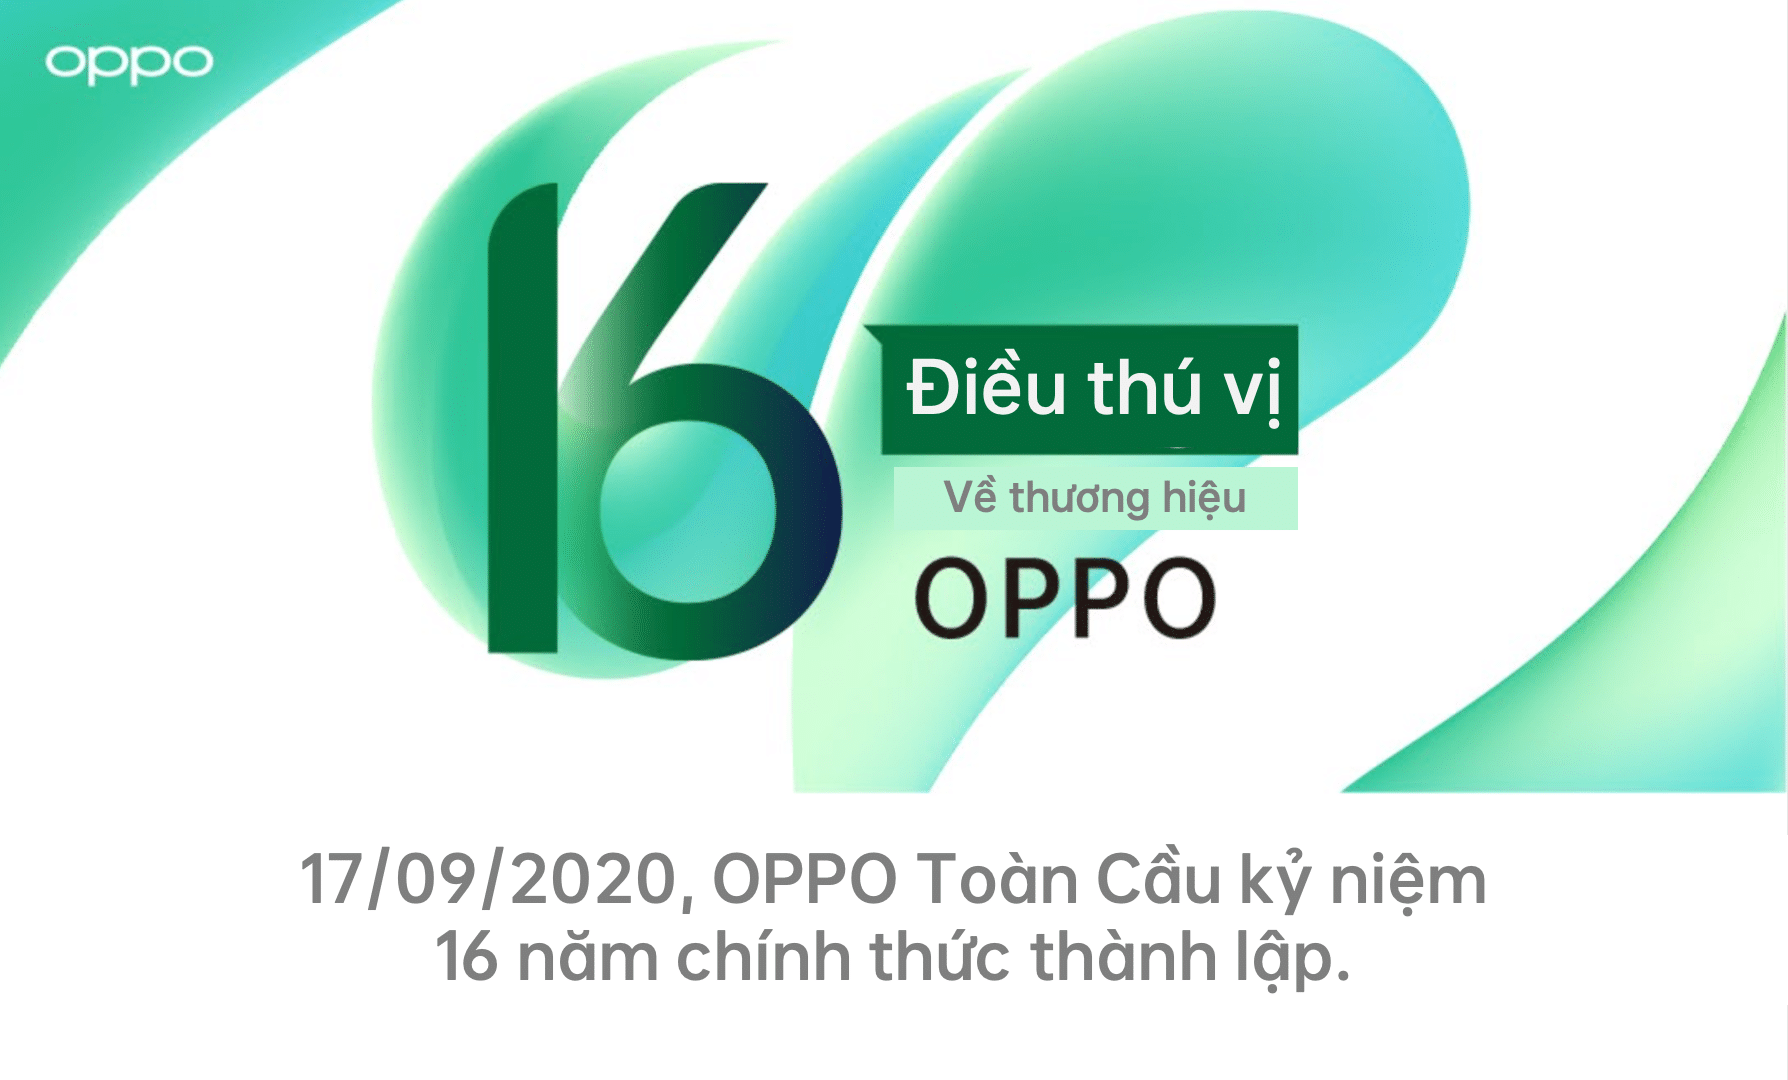 OPPO kỷ niệm 16 năm chính thức thành lập